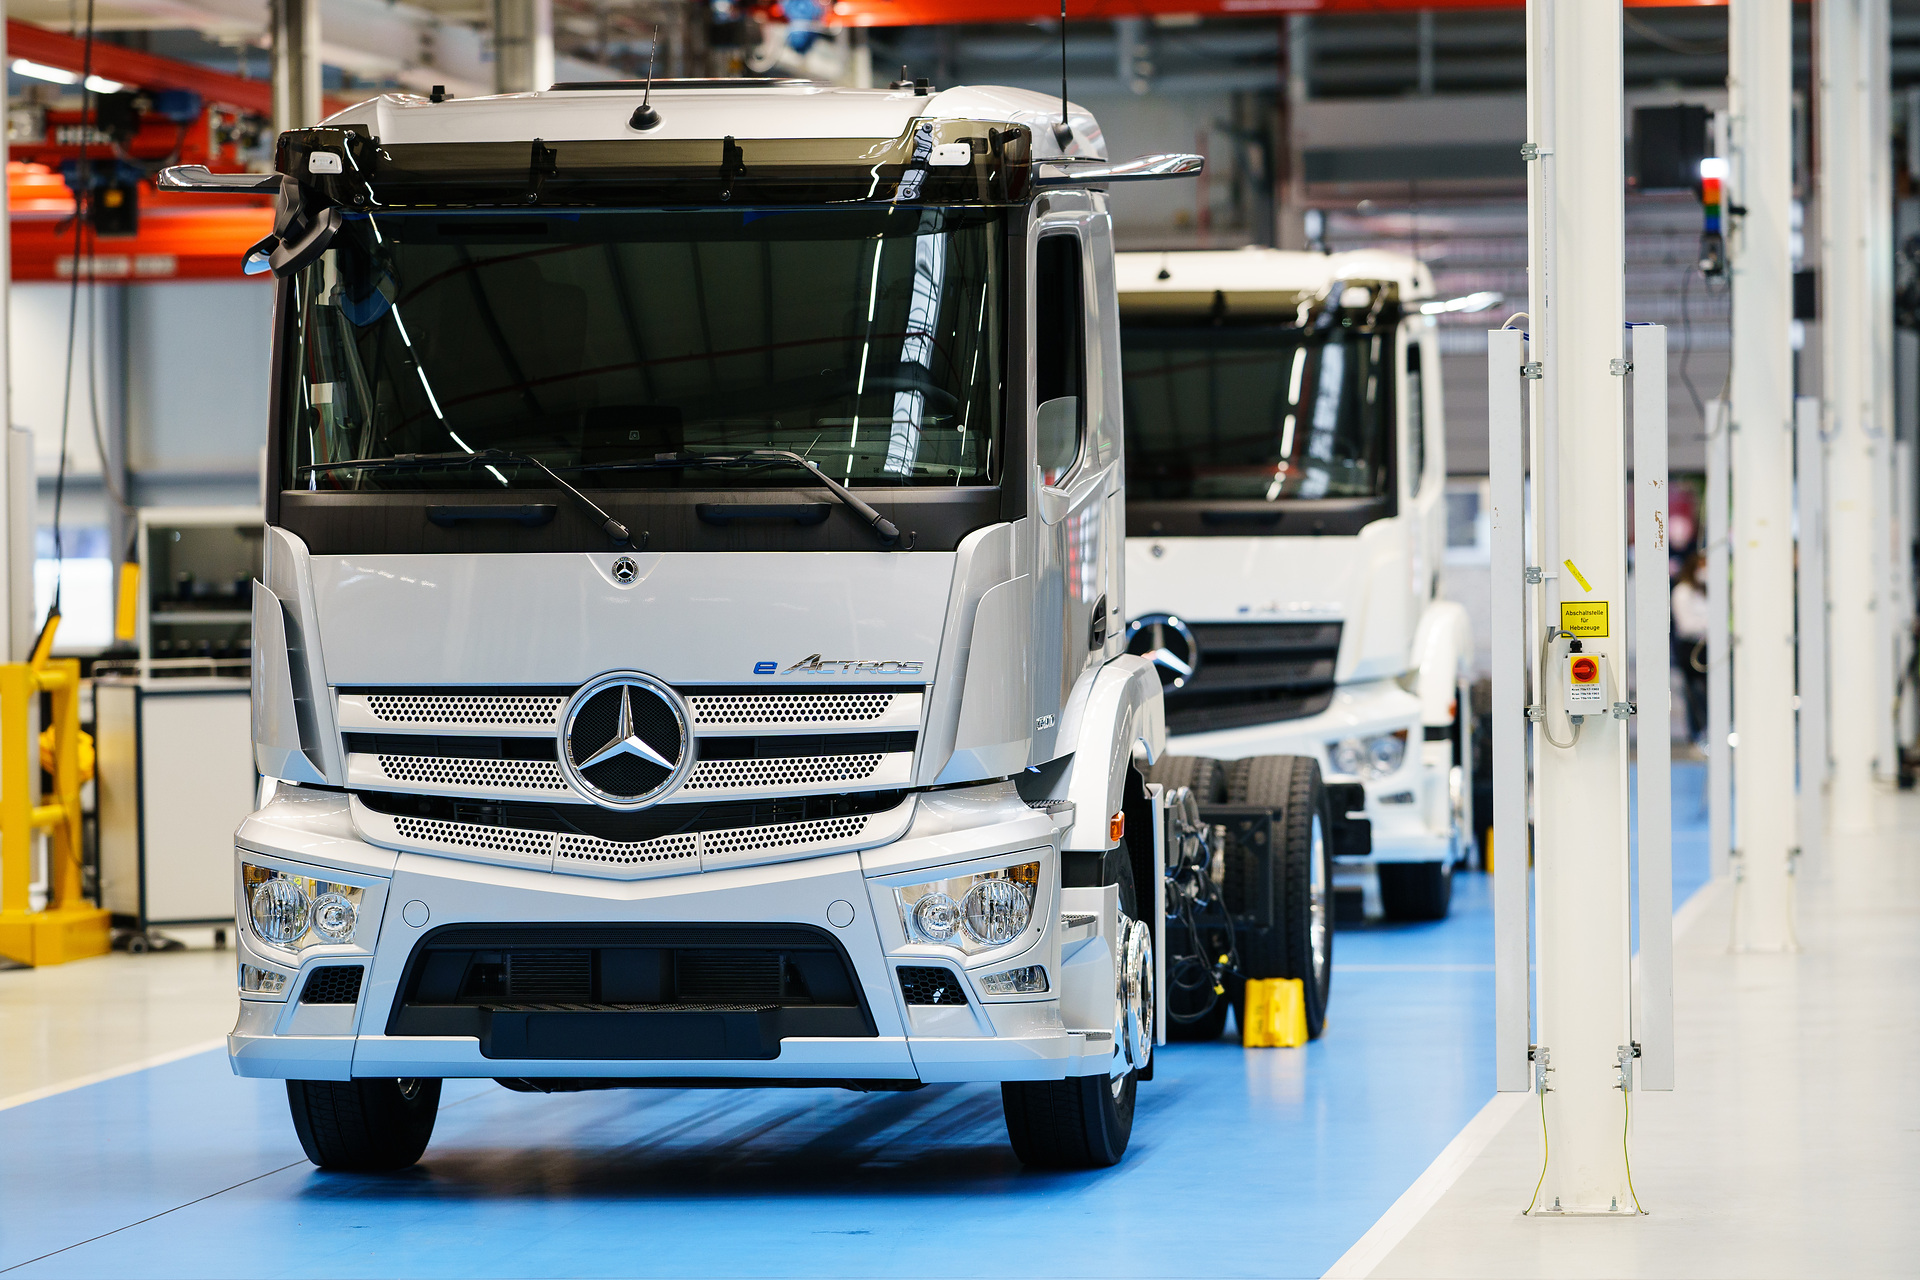 Mercedes-Benz Trucks und Einride unterzeichnen ersten Großauftrag für batterie-elektrischen eActros